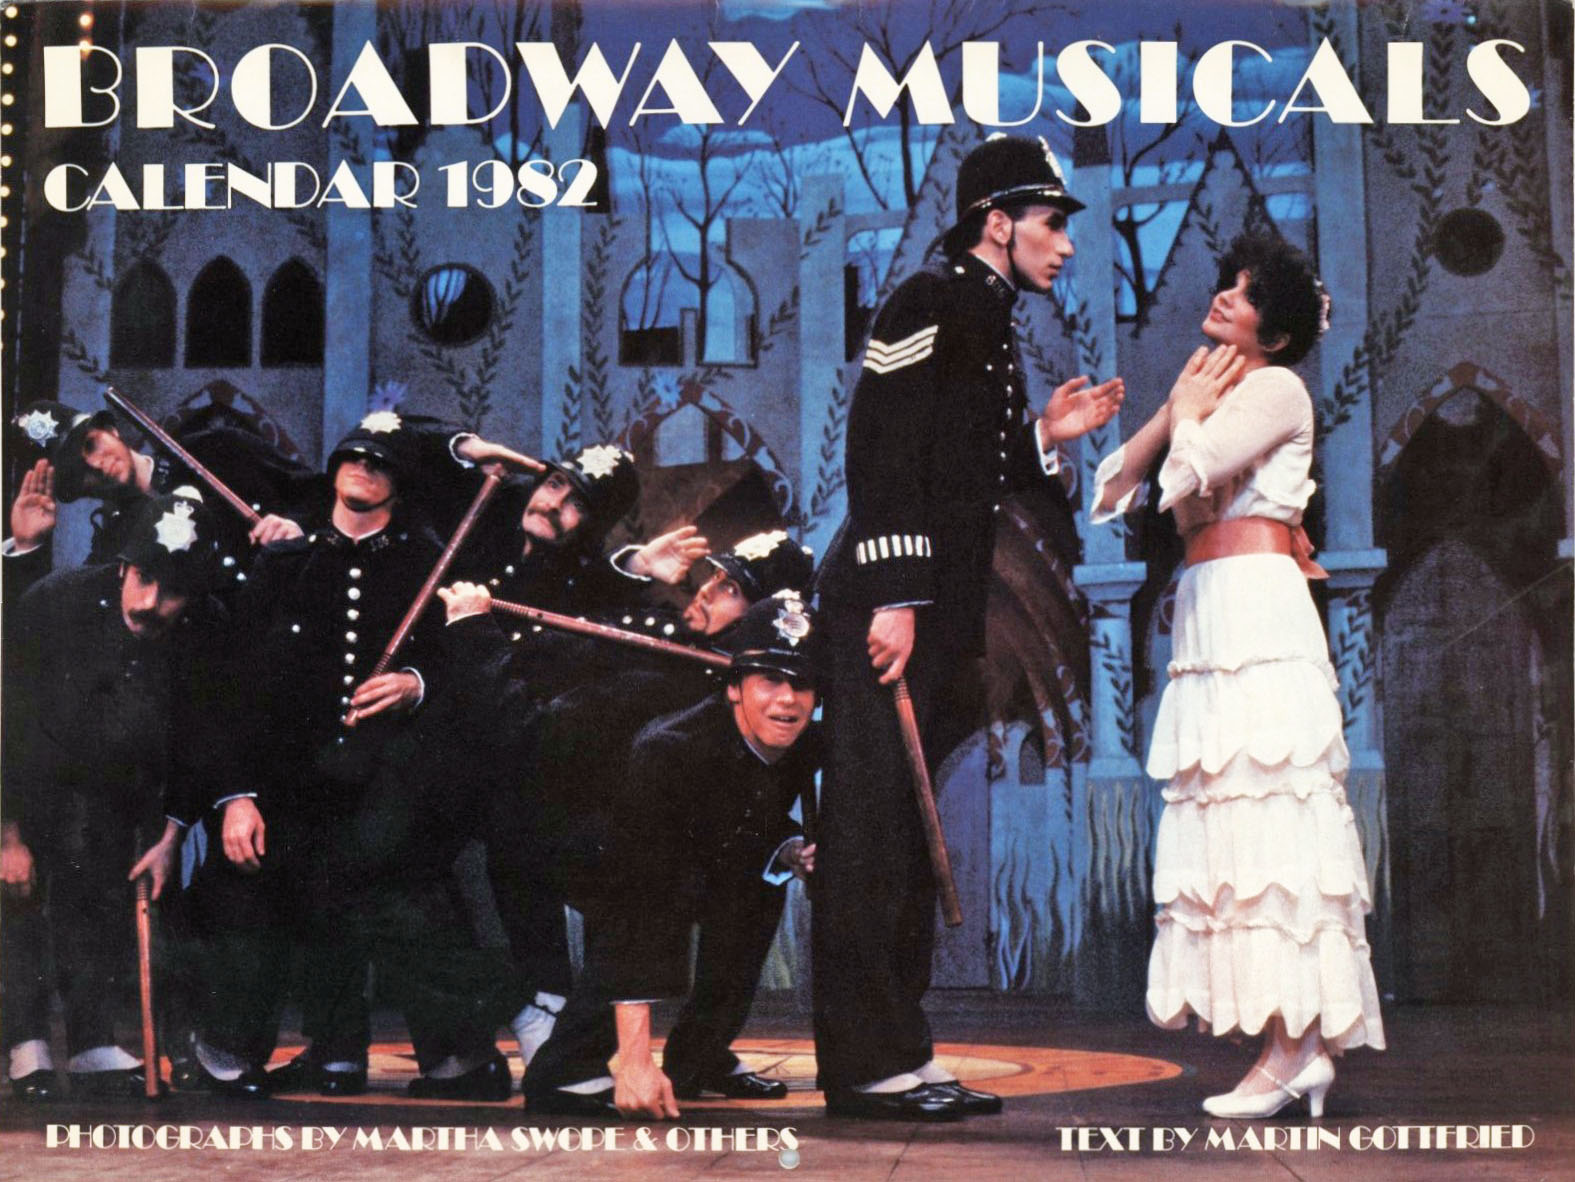 Broadway Musicals Calendar 1982